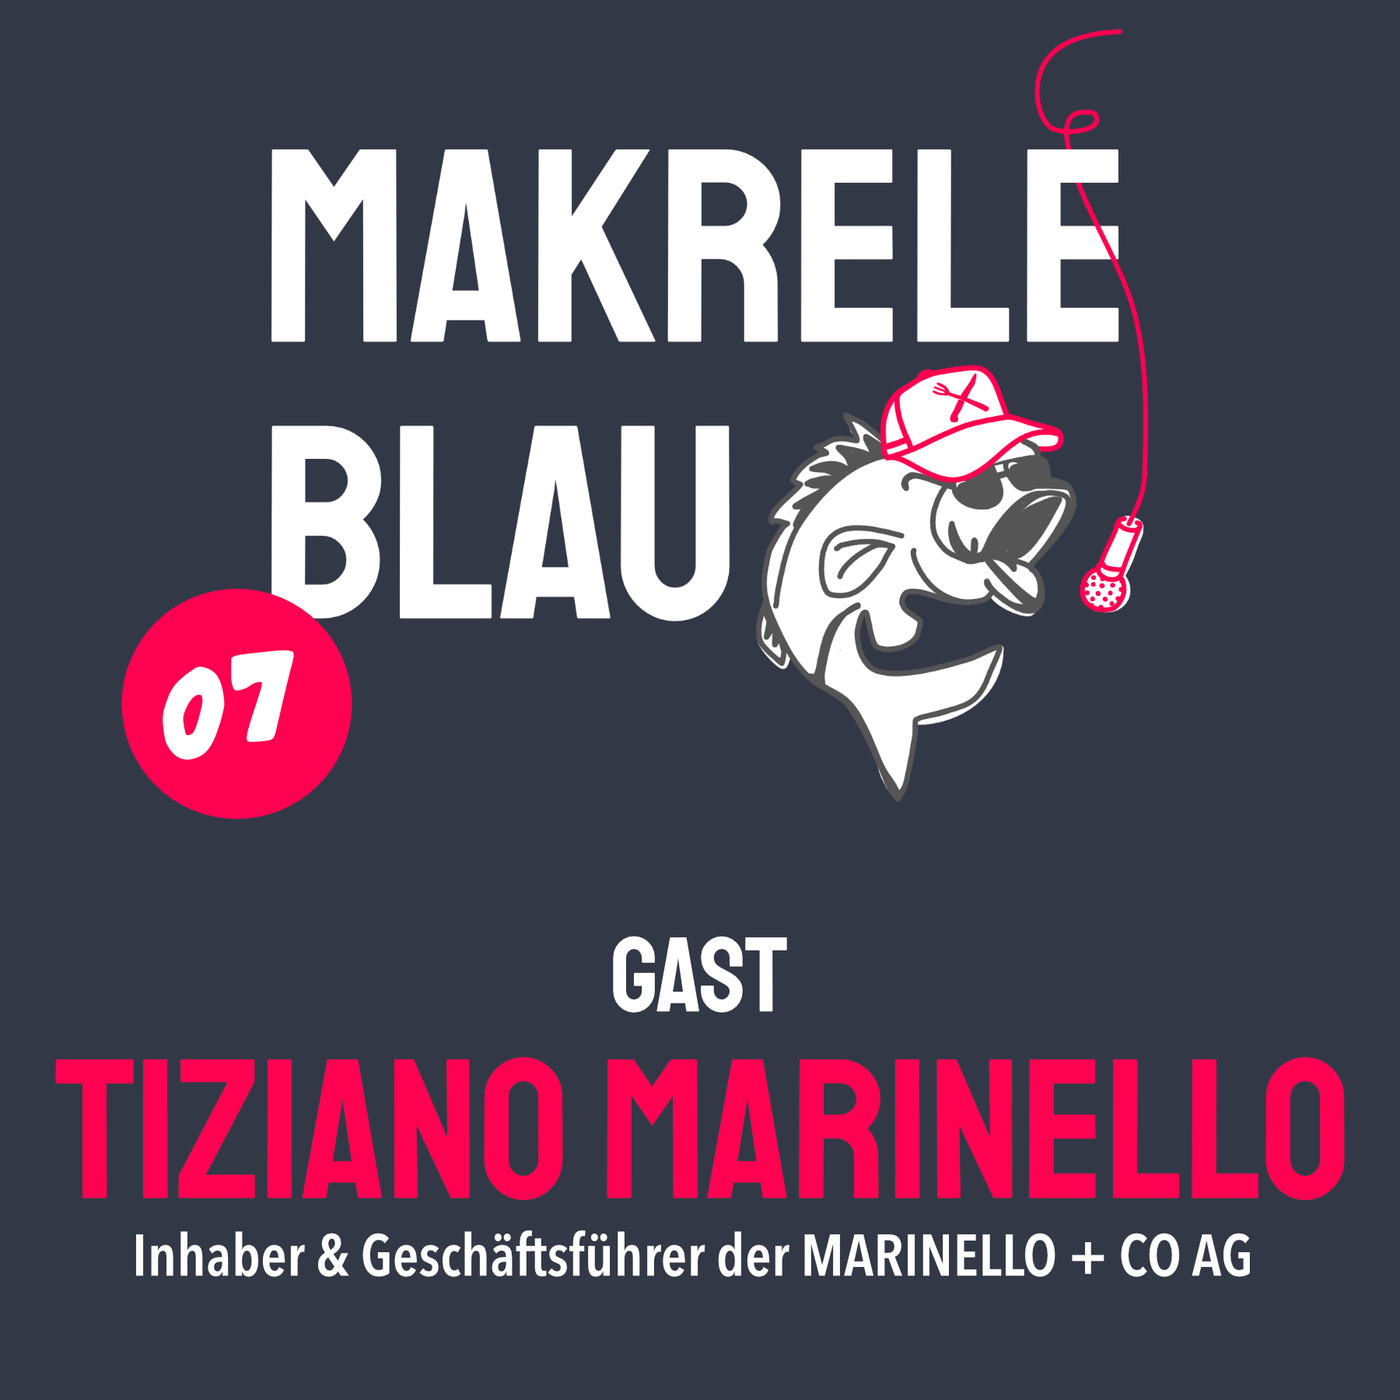 Makrele Blau #07 – Alles pico bello, mit em Tiziano Marinello